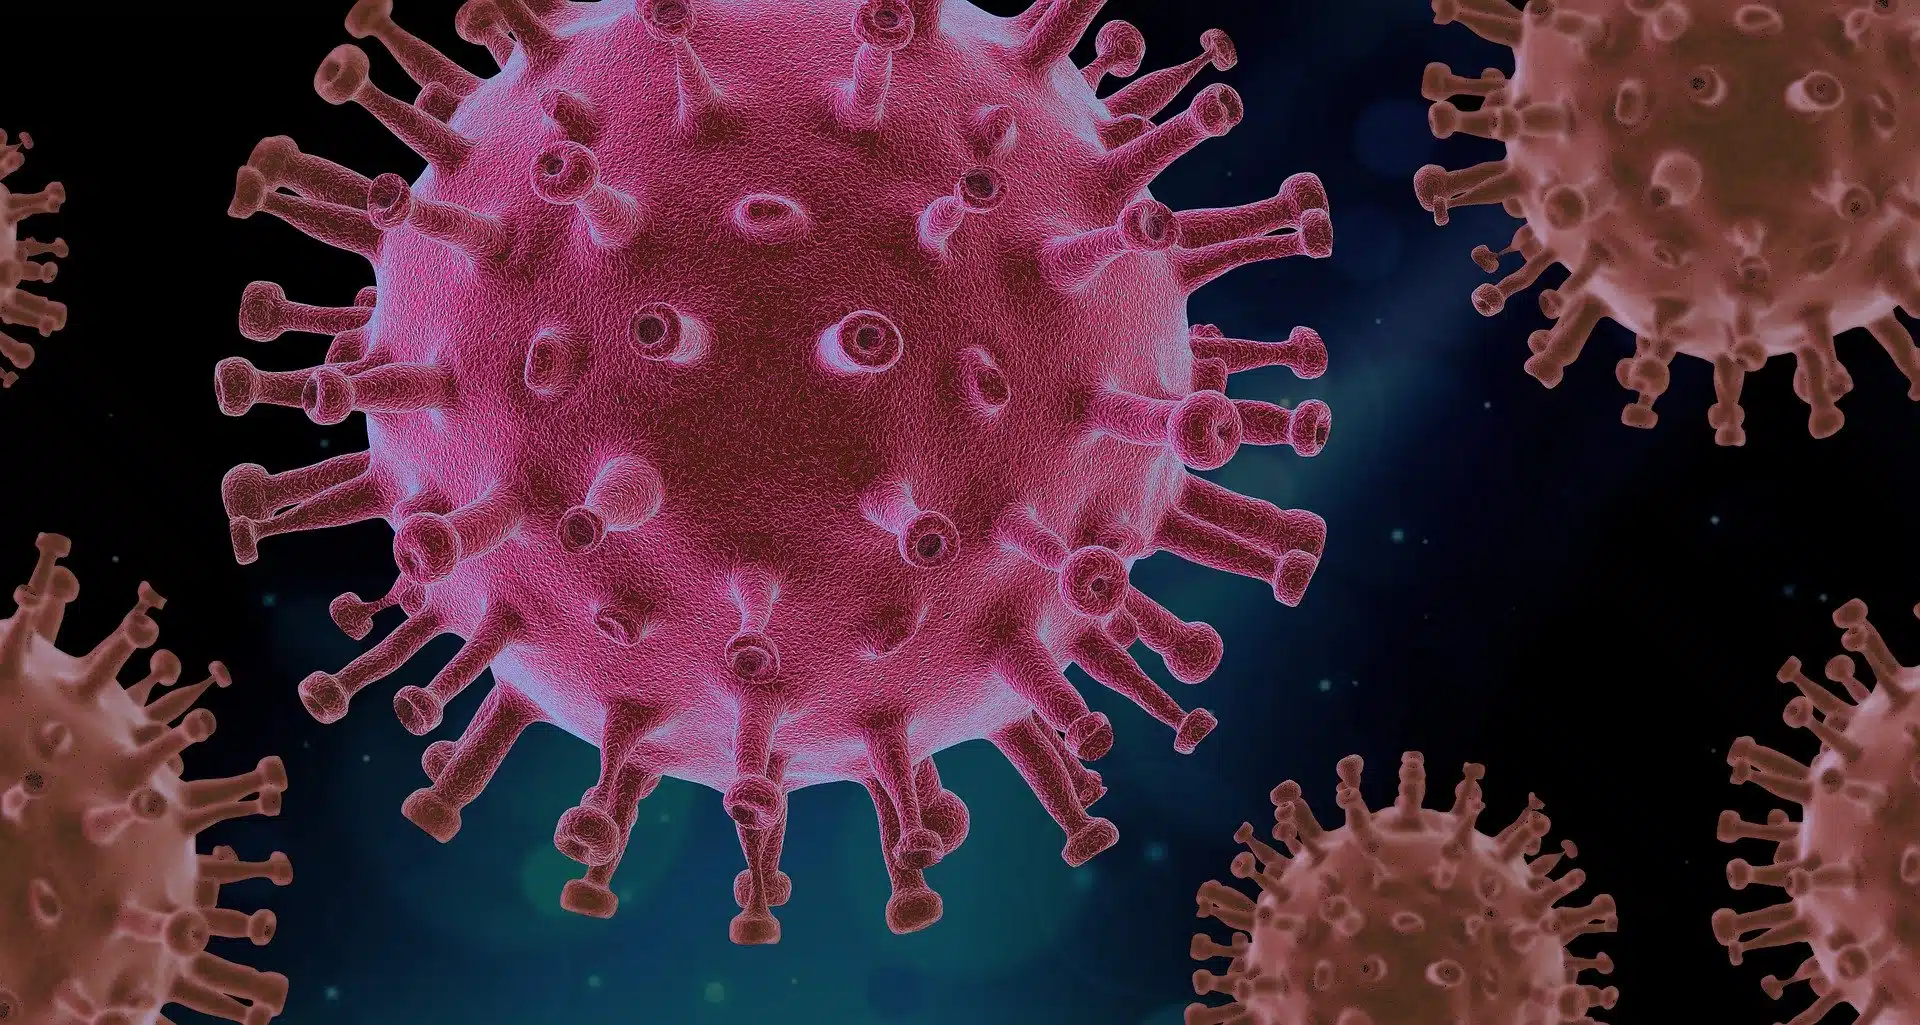 Nuovo virus dalla Cina: pandemia in arrivo in Italia?